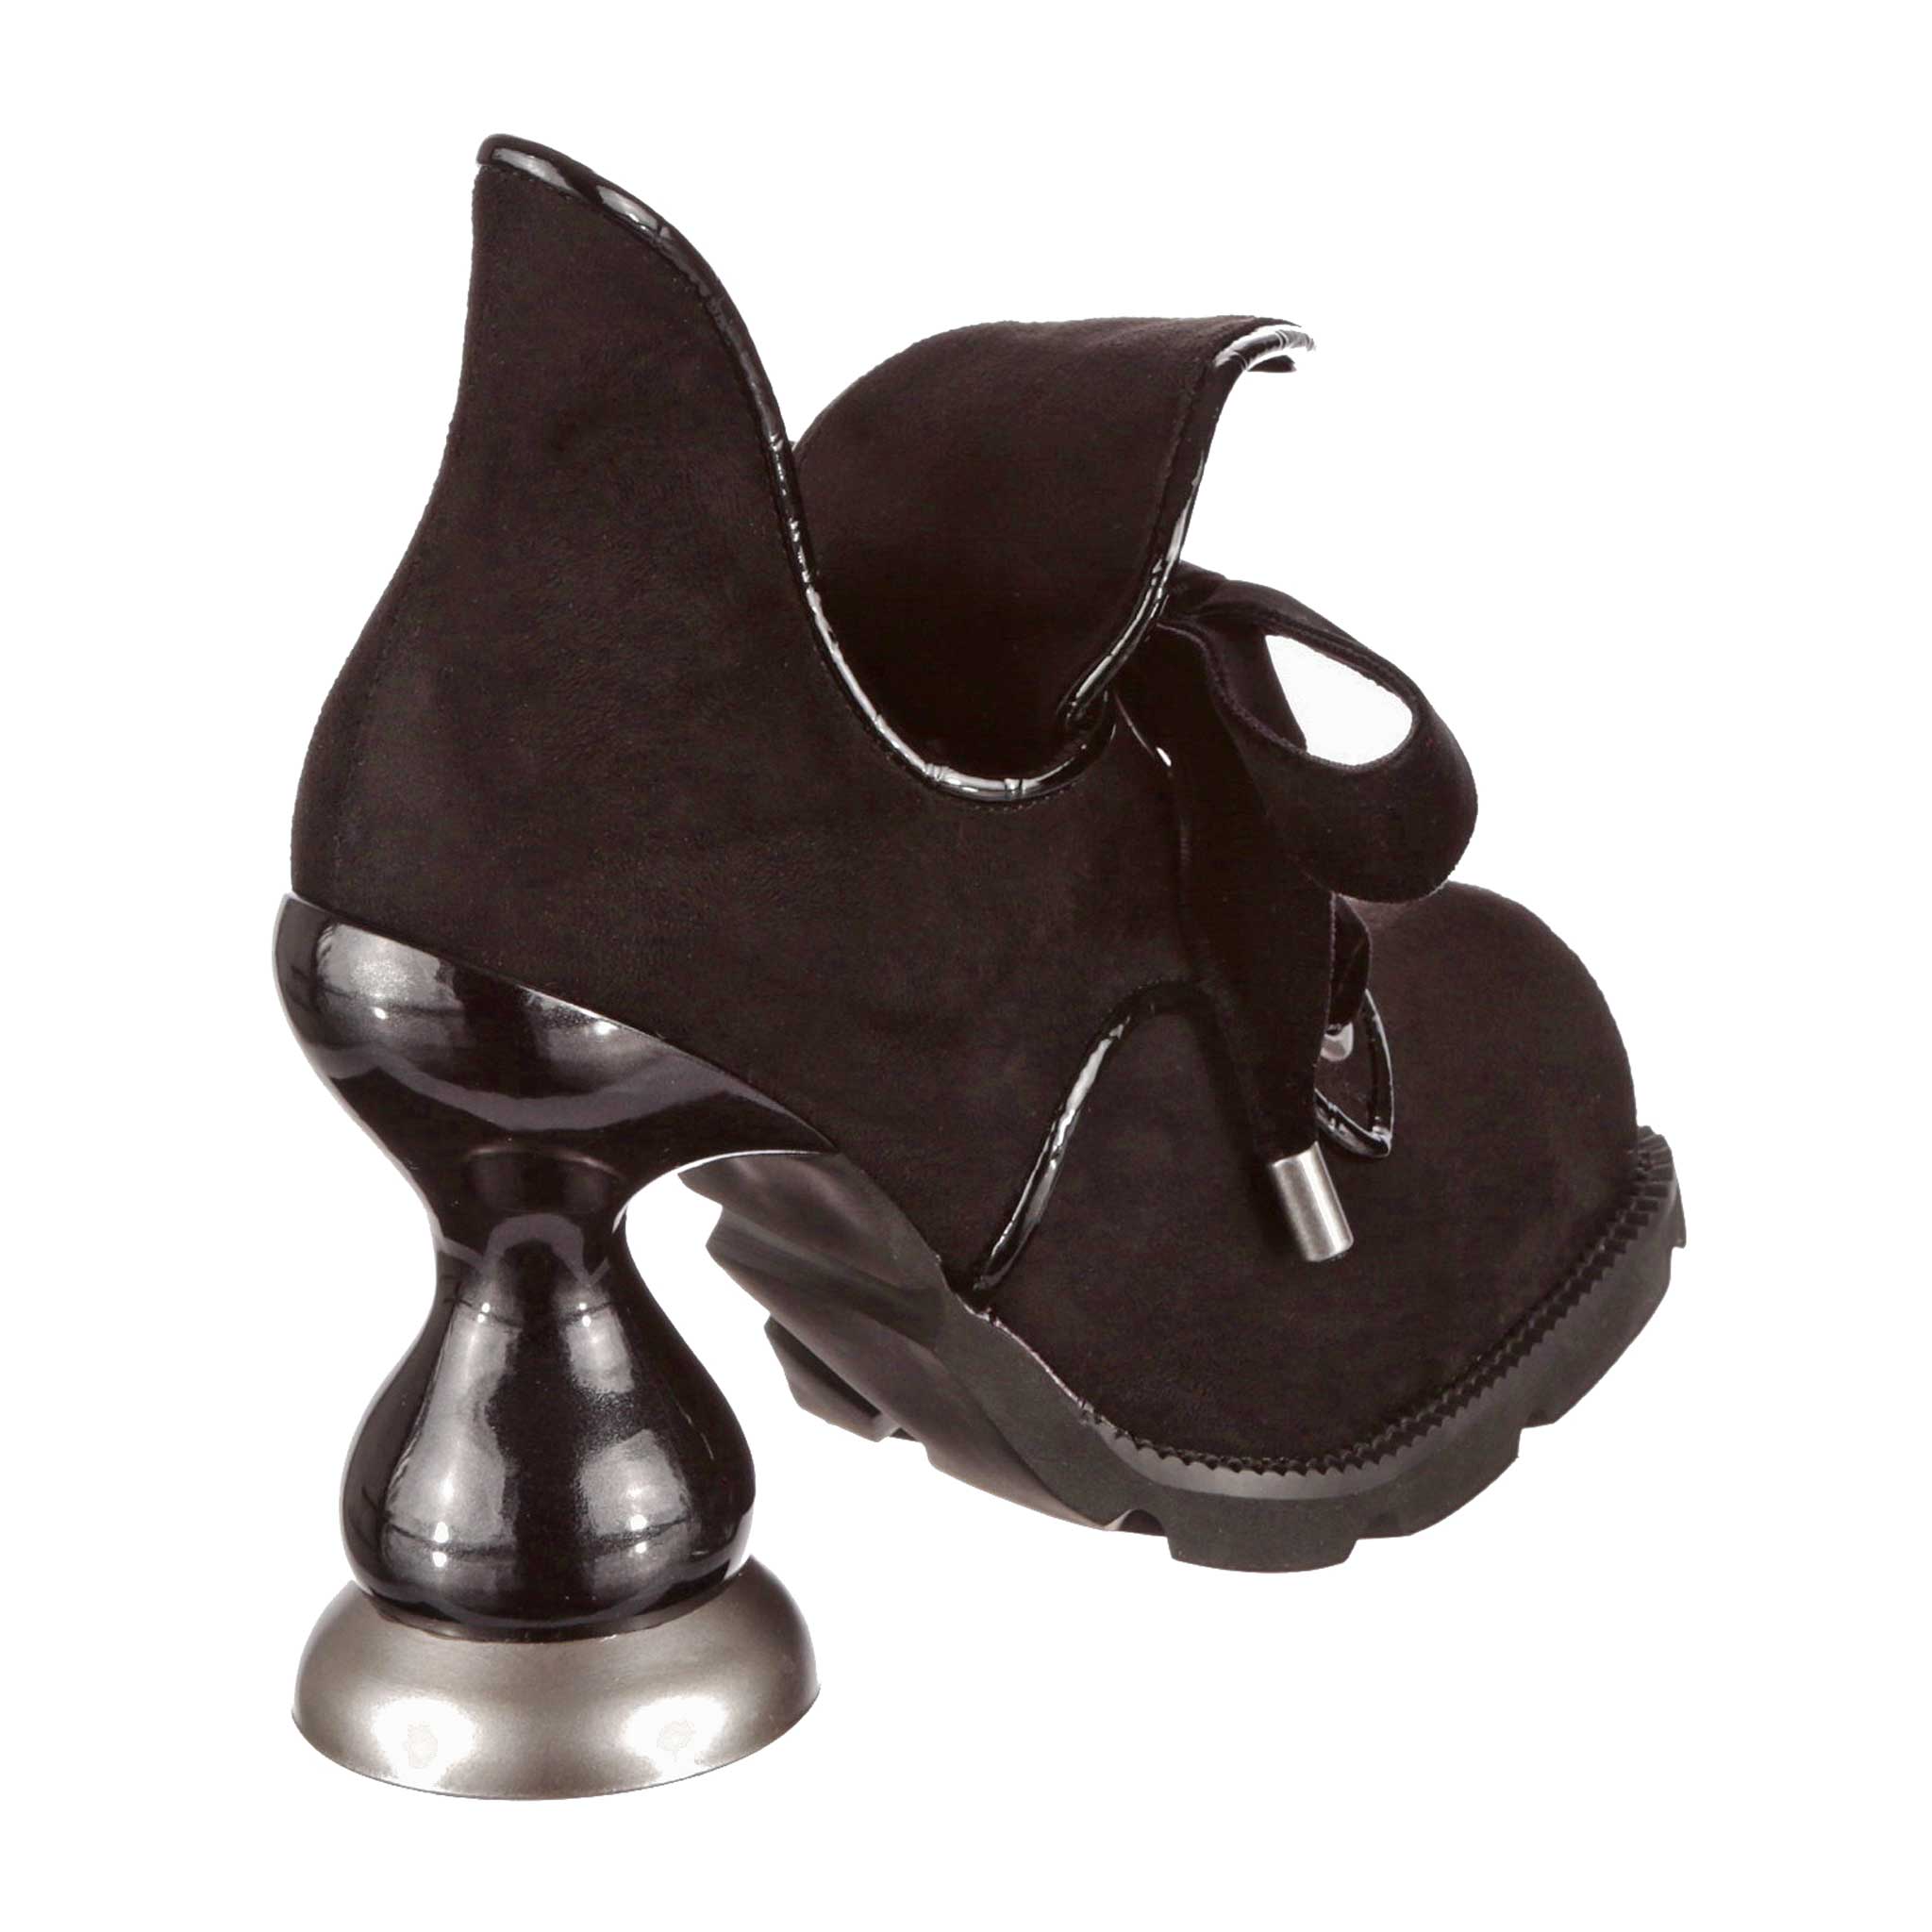 Buy Street Style Store Open Toe Platform Heels - Heels for Women 25527244 |  Myntra